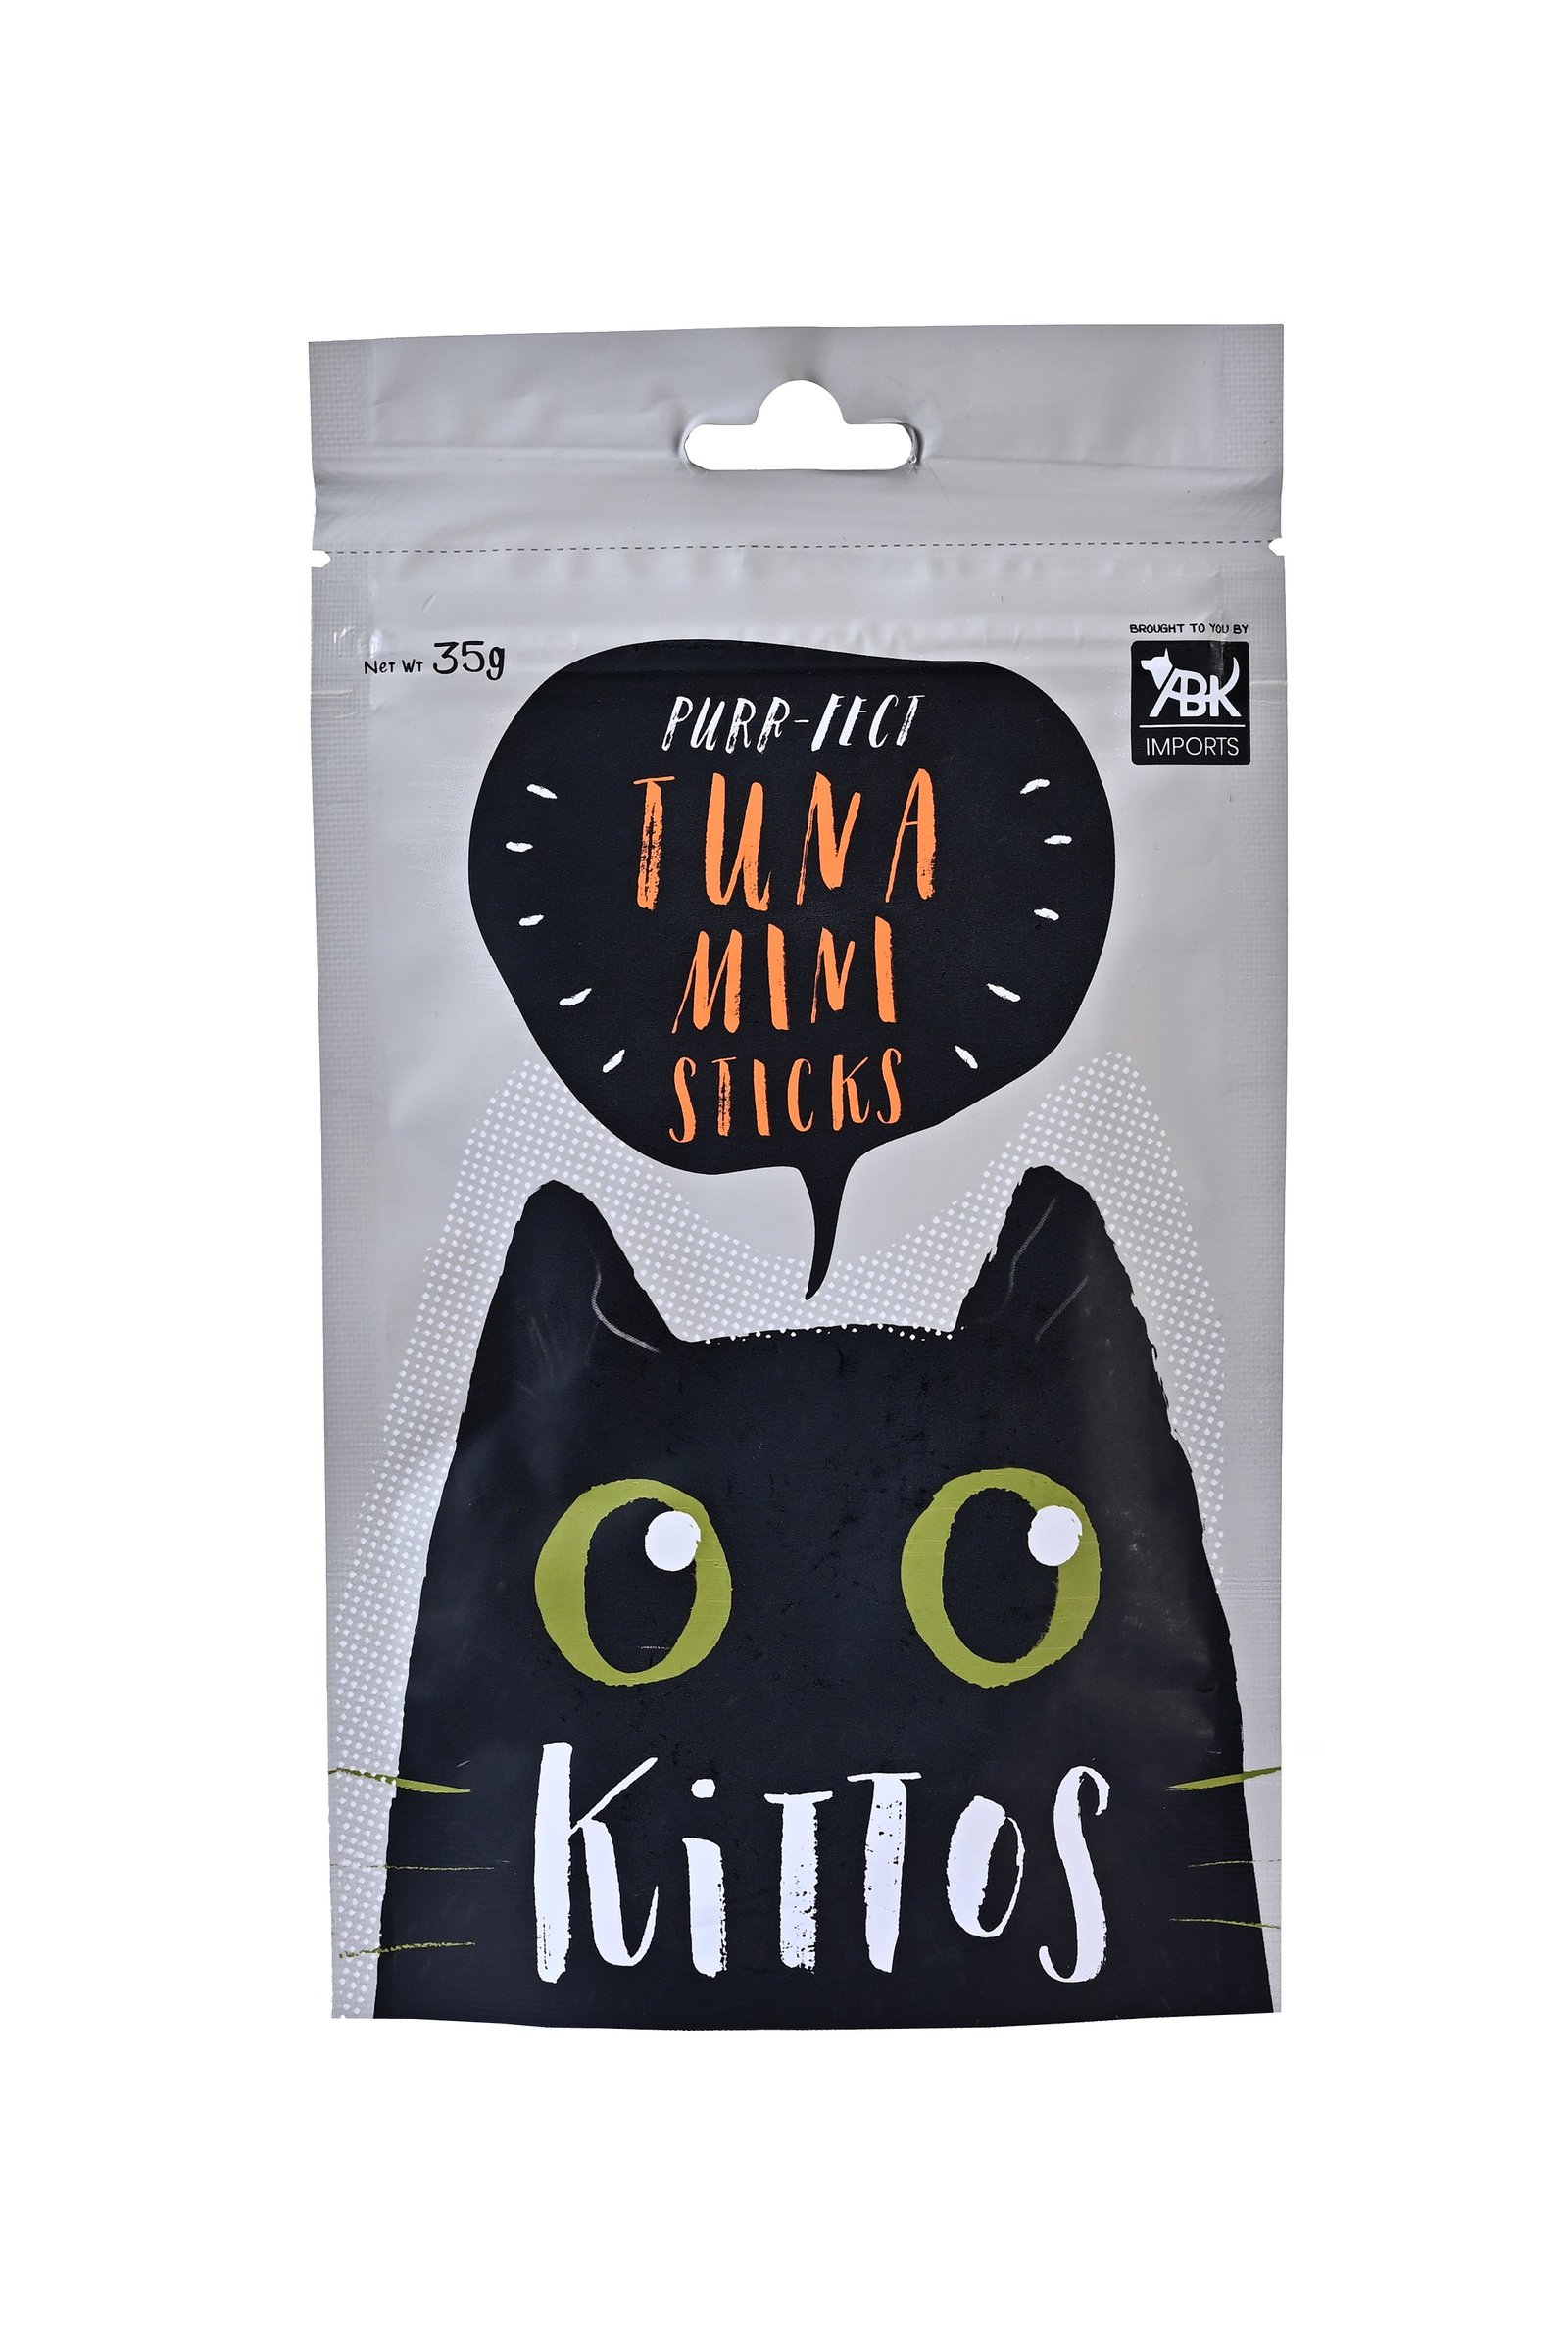 Kittos Tuna Mini Sticks Cat Treats